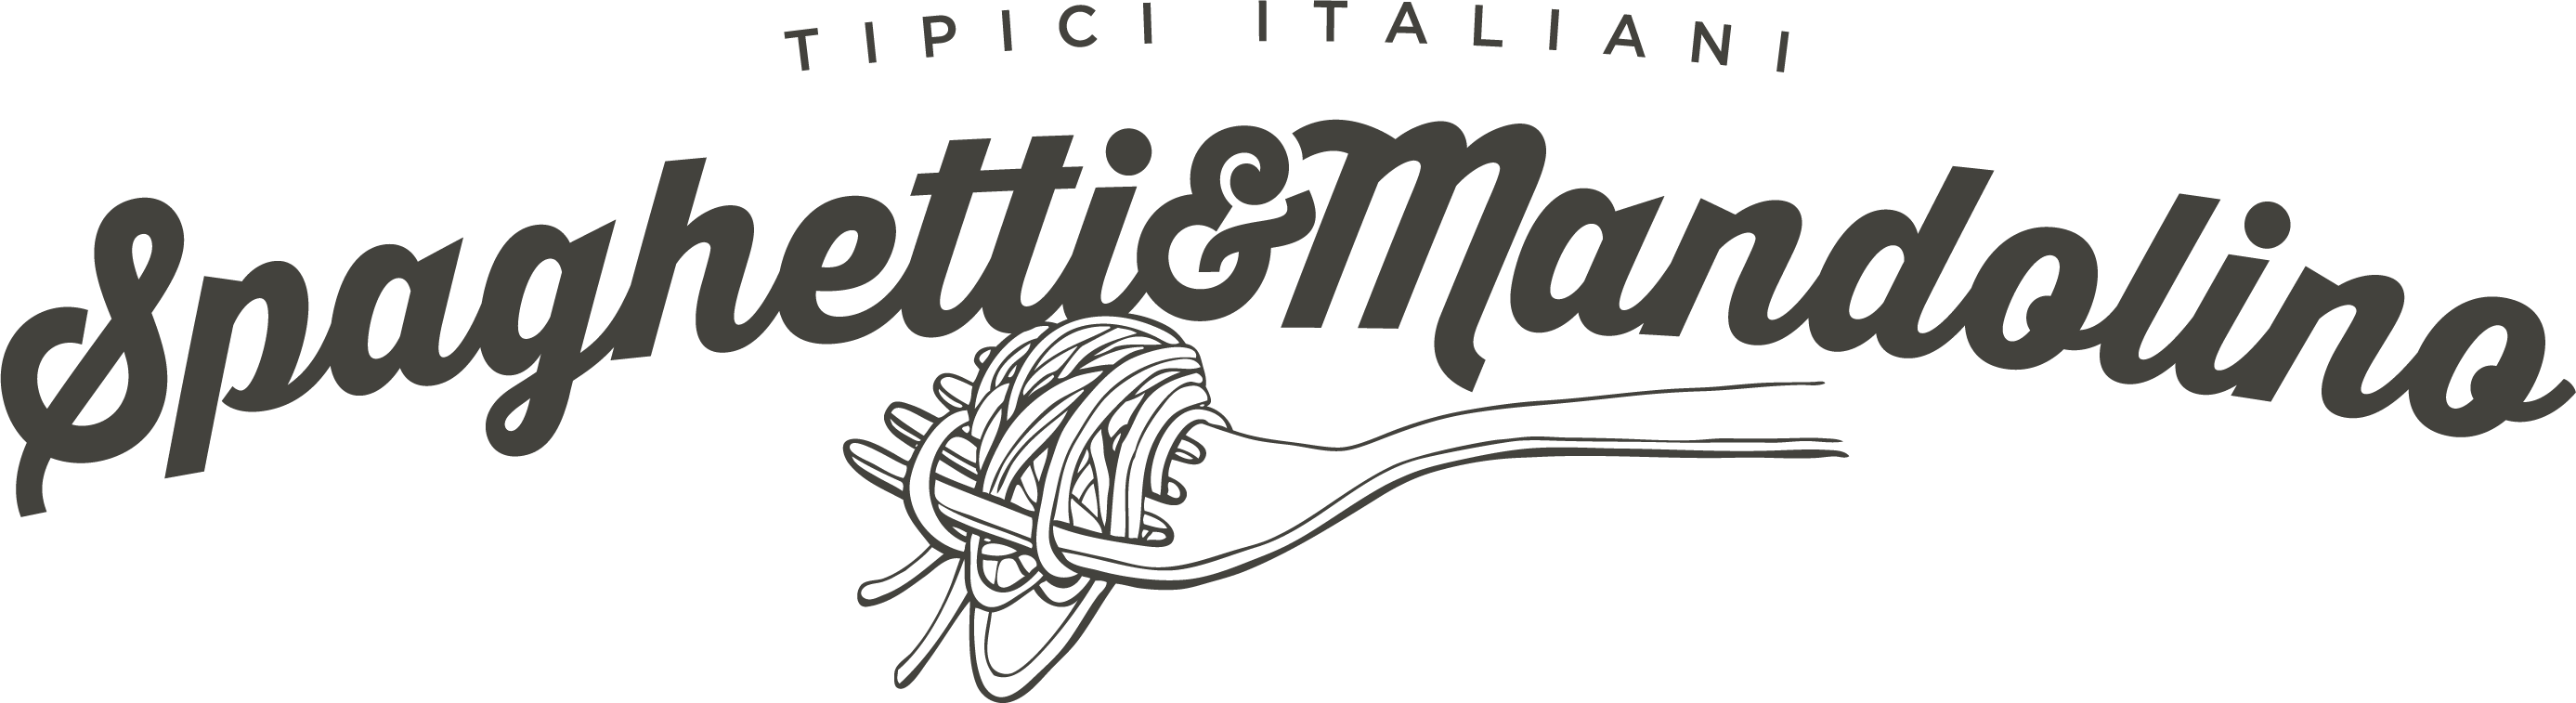 Spaghetti & Mandolino: e-commerce prodotti tipici e vini